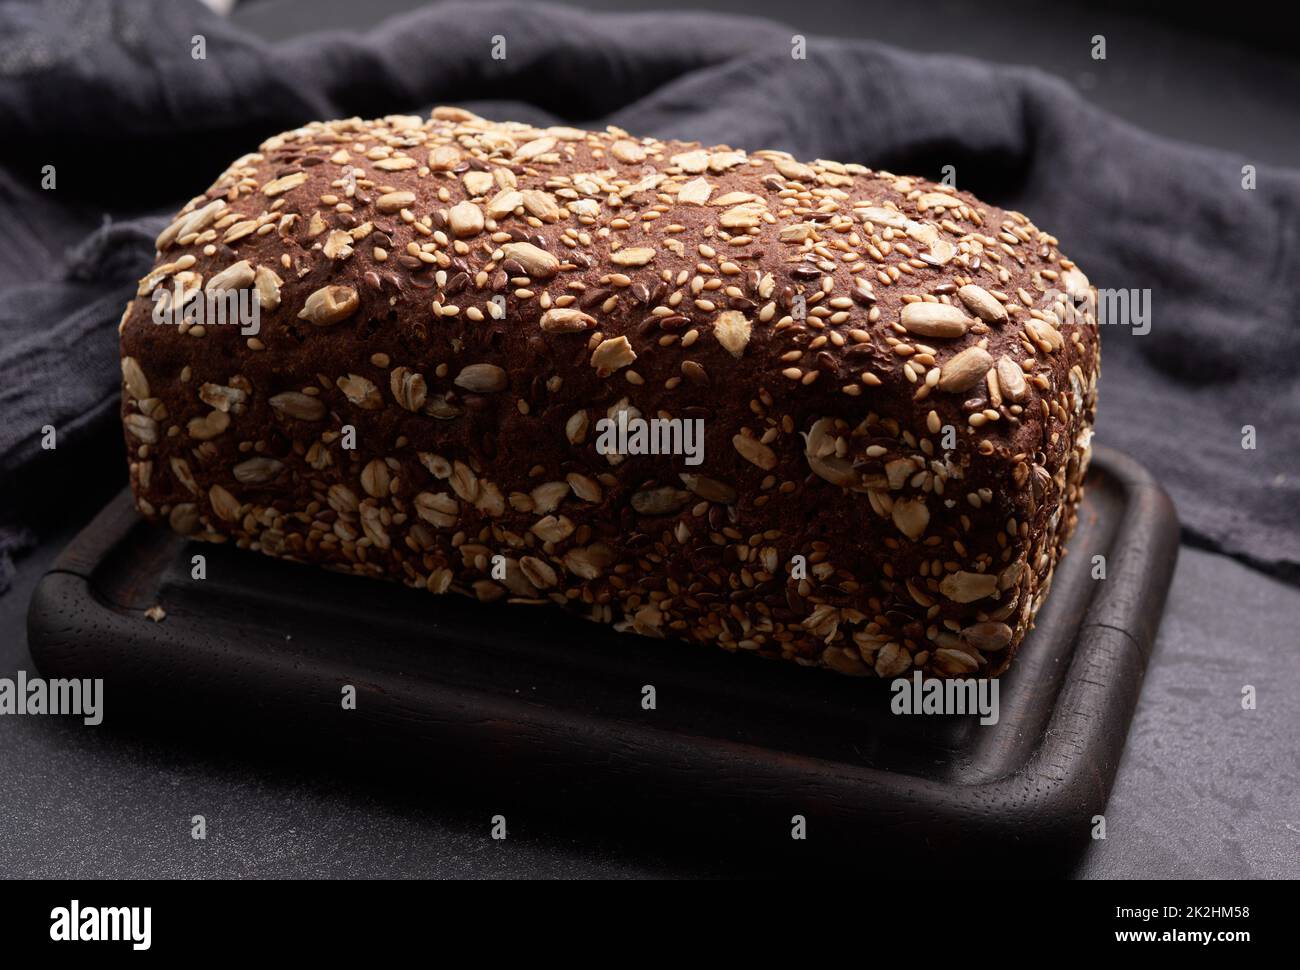 pane di farina di segale quadrata al forno con farinata d'avena su sfondo nero, vista dall'alto Foto Stock